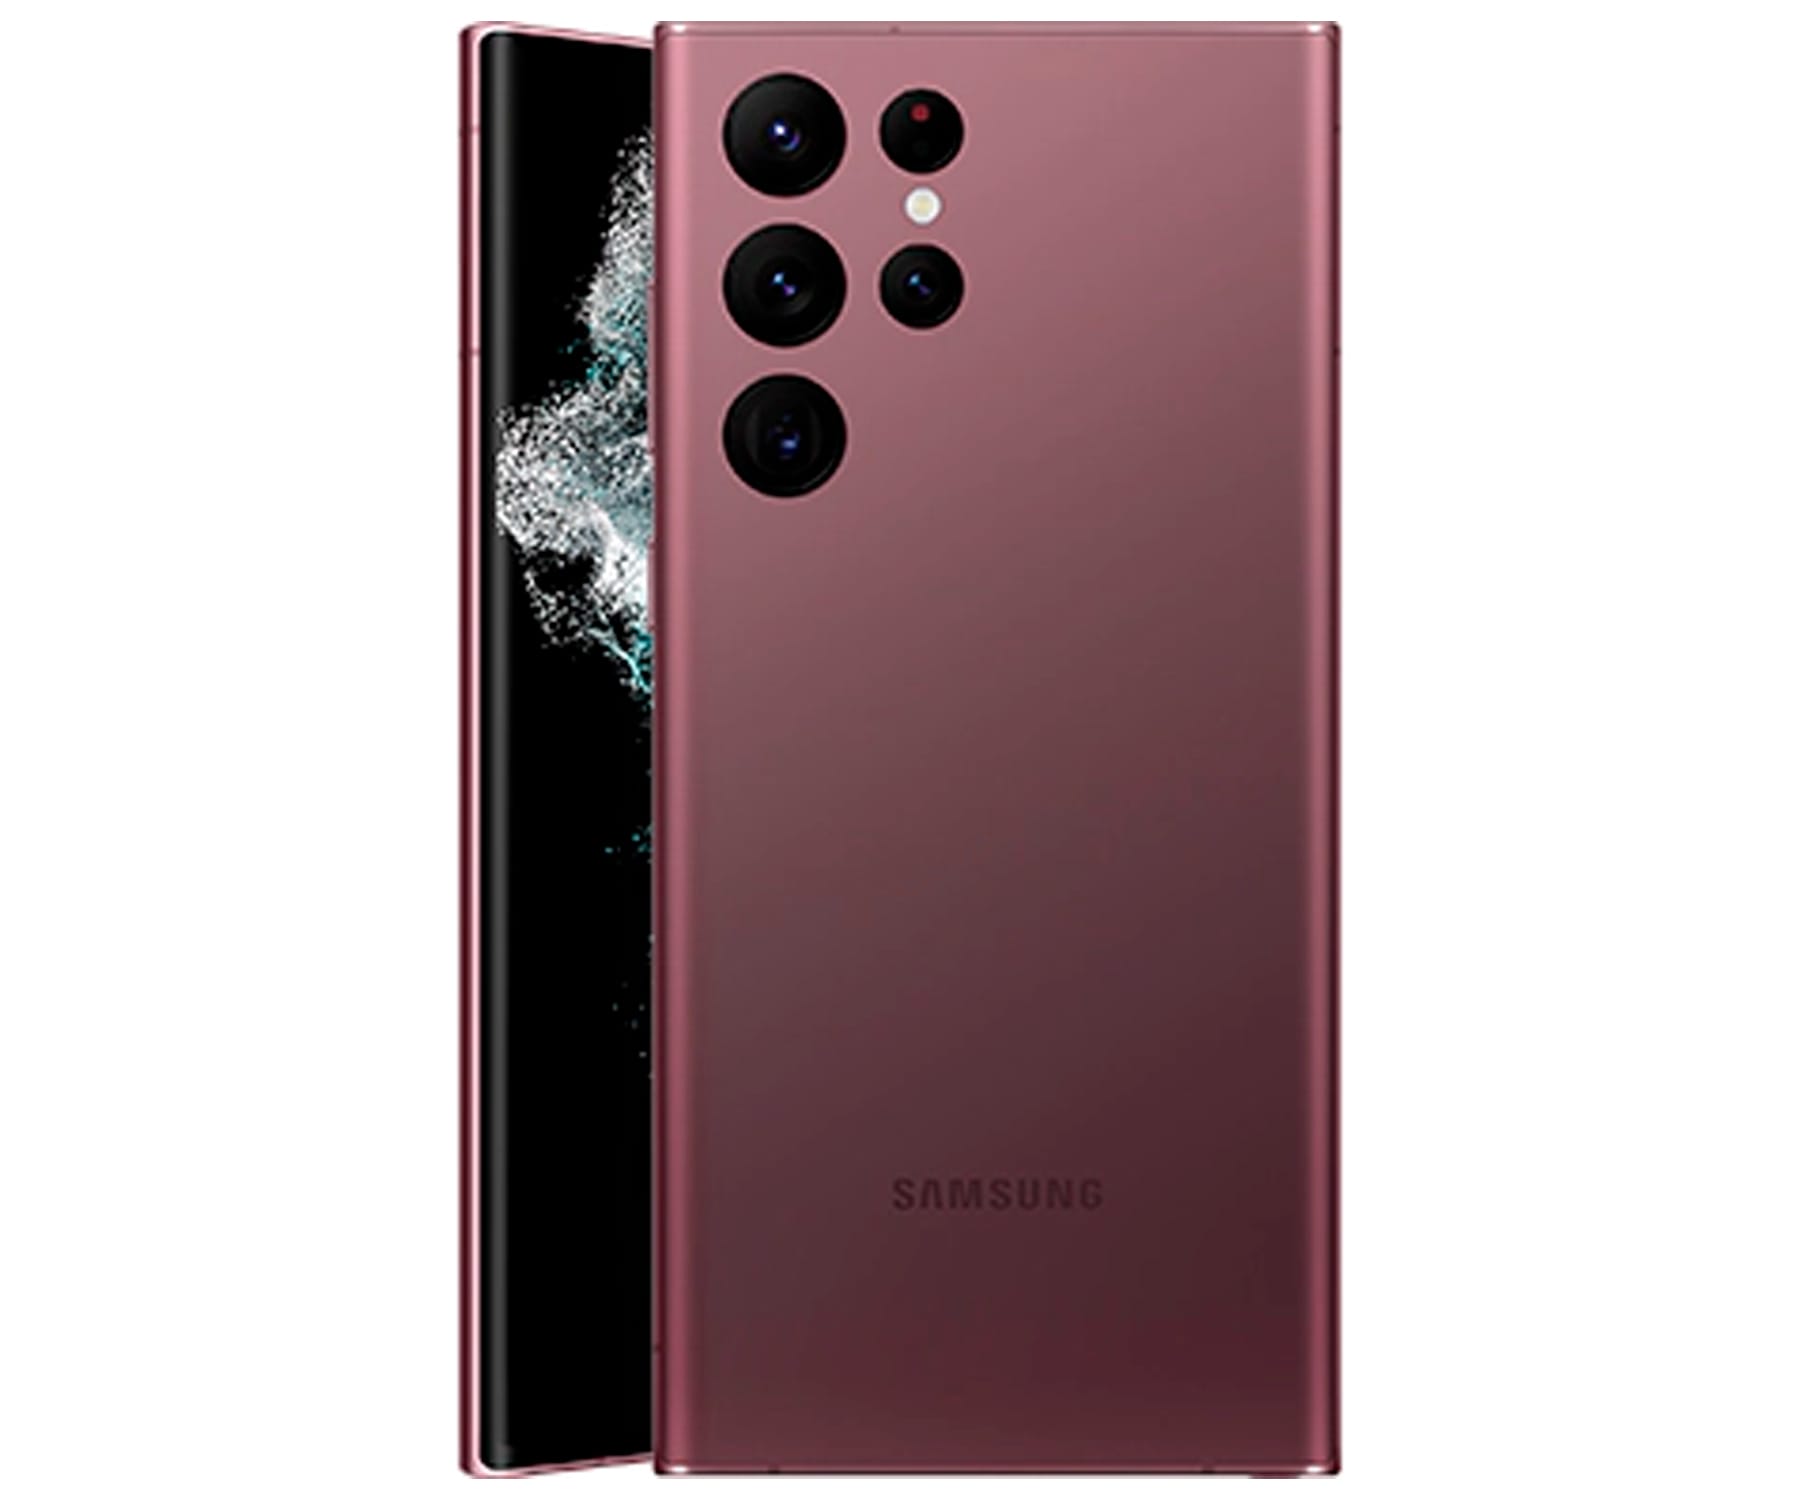 Samsung Galaxy S22 Ultra 5G Burgundy / 12+256GB / 6.8" AMOLED 120Hz Quad HD+